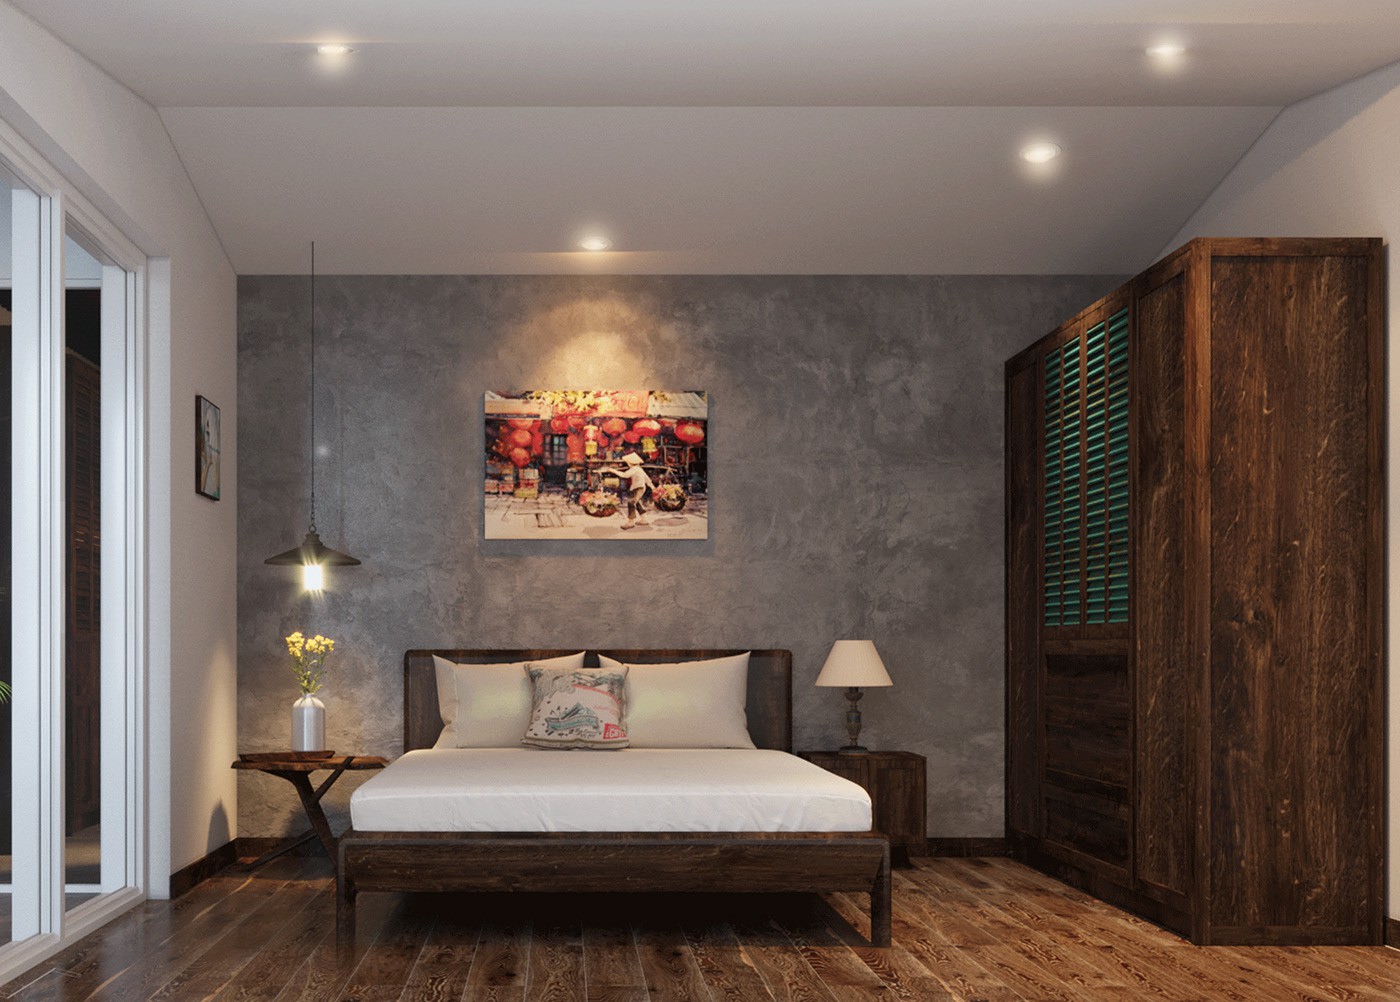 Hình ảnh phòng ngủ nhà phố ấn tượng với tường bê tông mộc mạc, tủ gỗ cổ xưa, tranh treo ấm áp